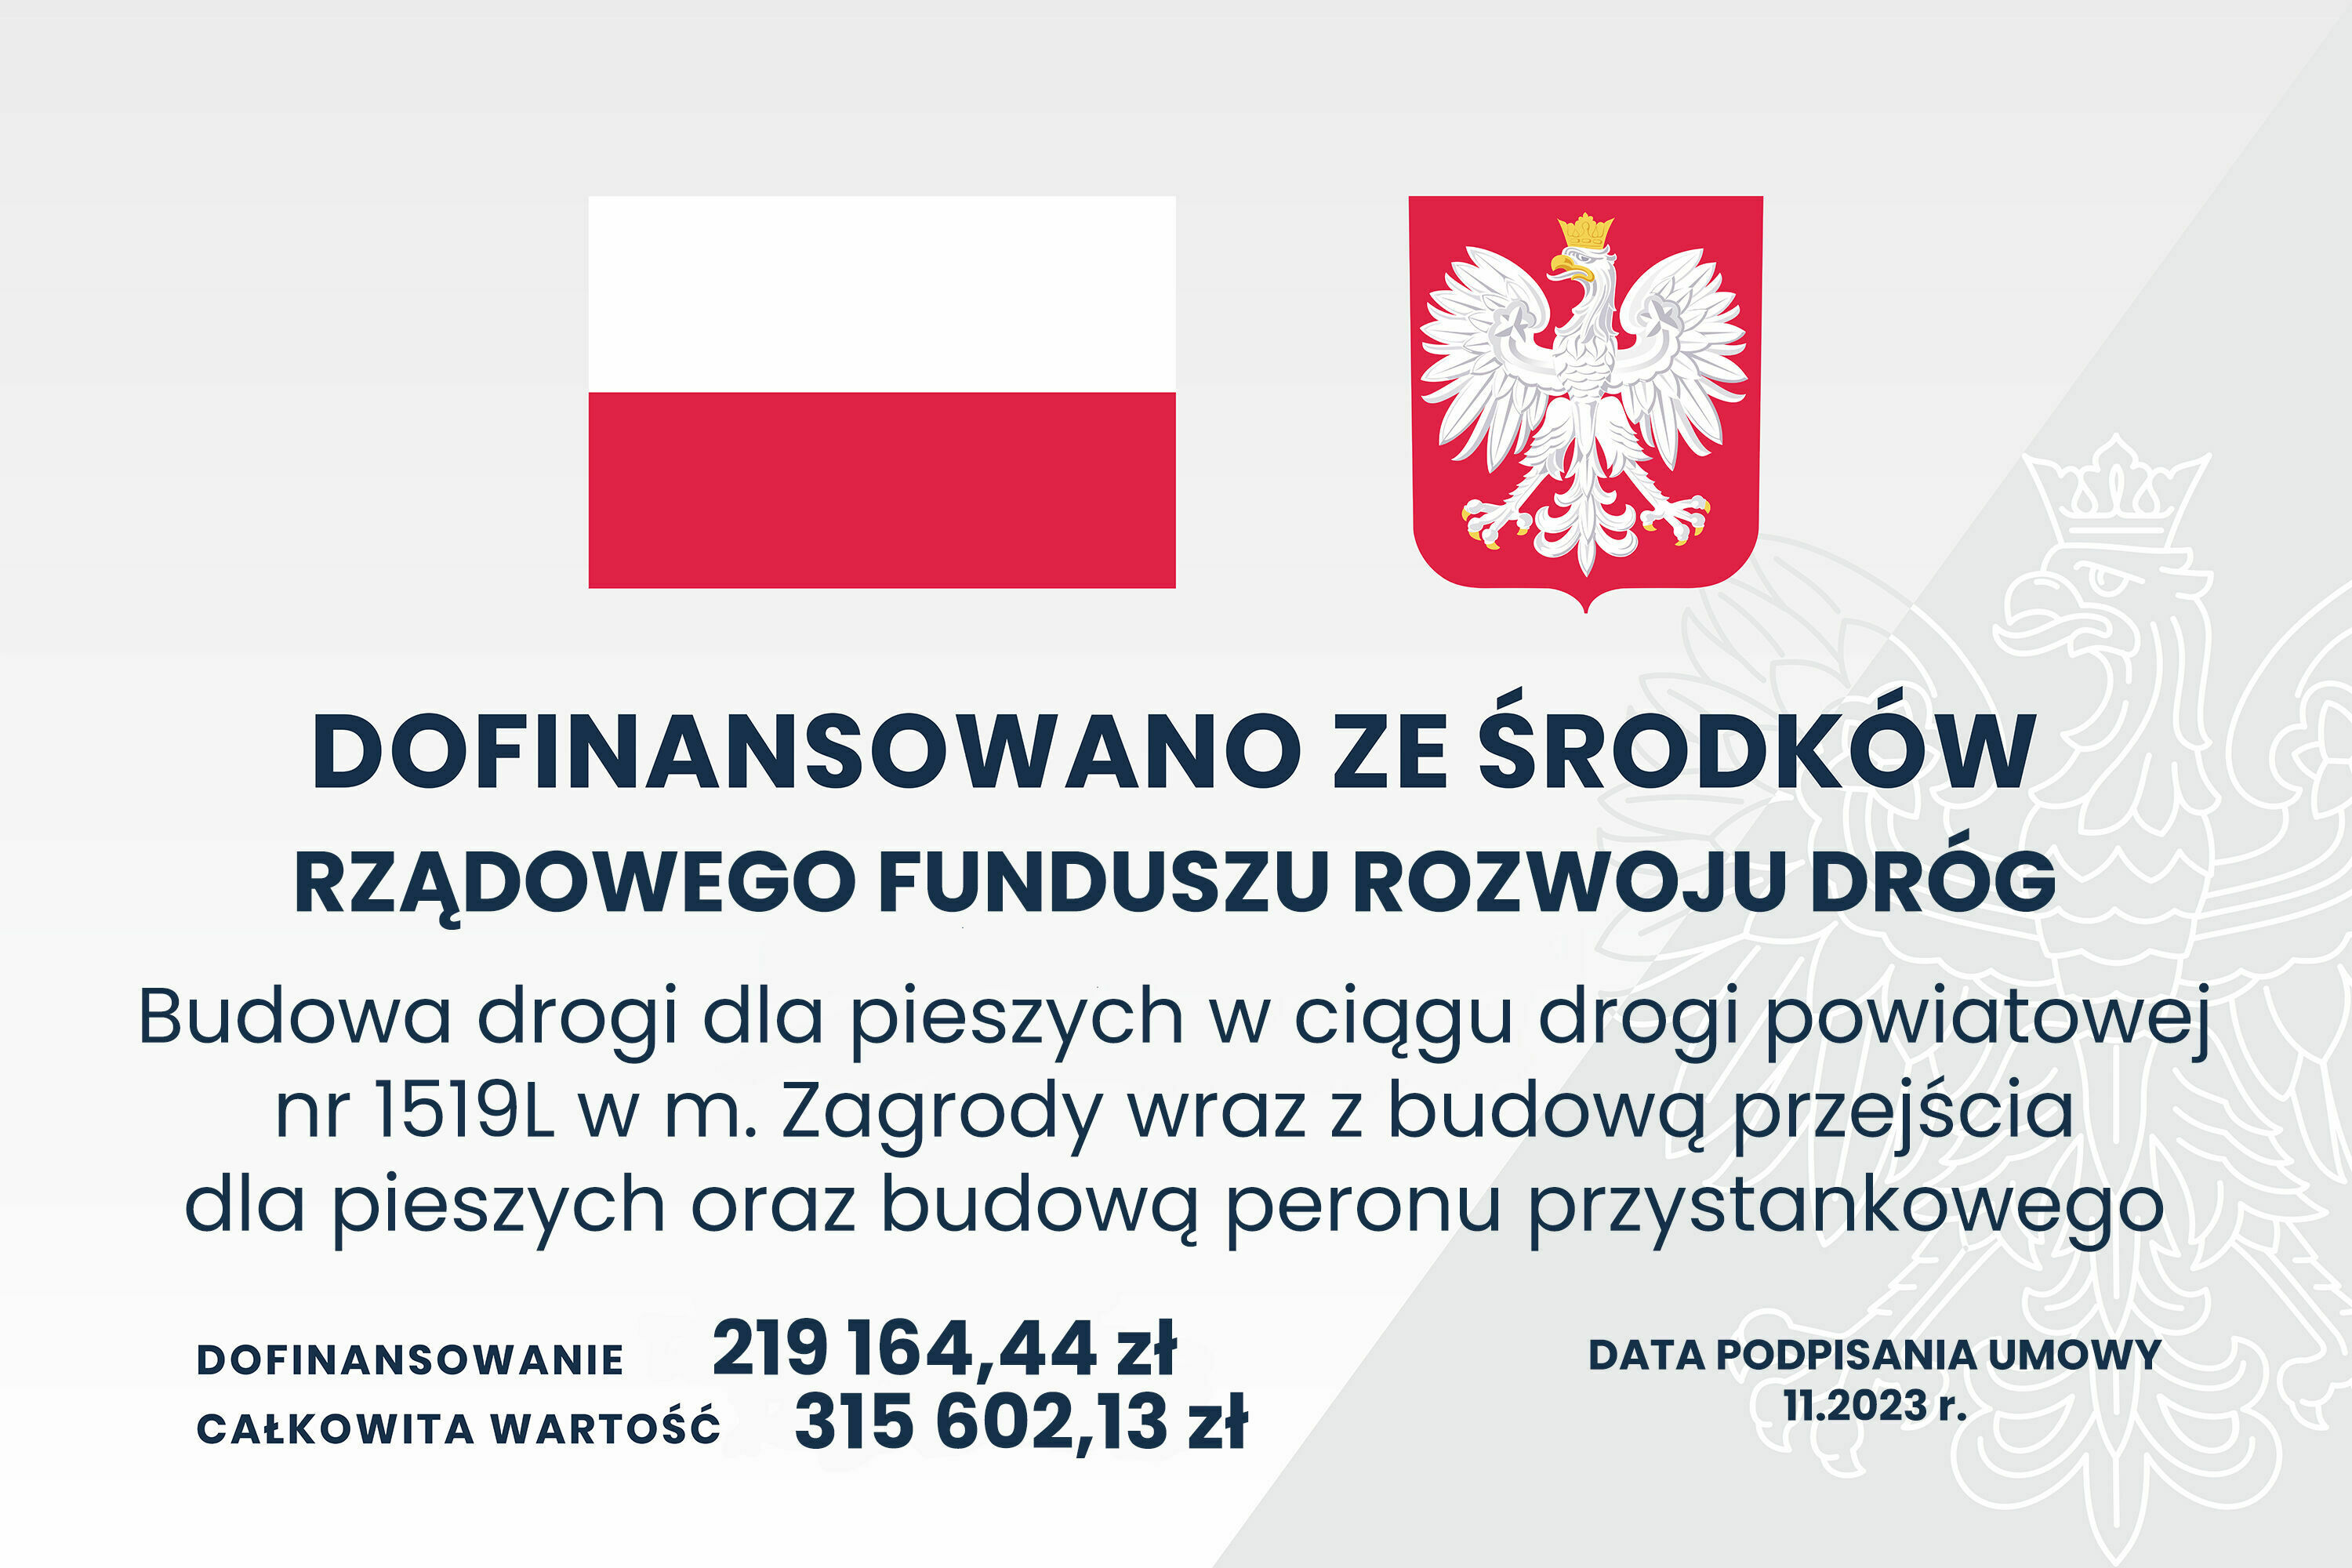 Na obrazie widoczna jest grafika z polską flagą, herbem Polski oraz tekstem informacyjnym dotyczącym dofinansowania z rządowego funduszu na budowę drogi dla pieszych, zawierającym kwoty i datę podpisania umowy.